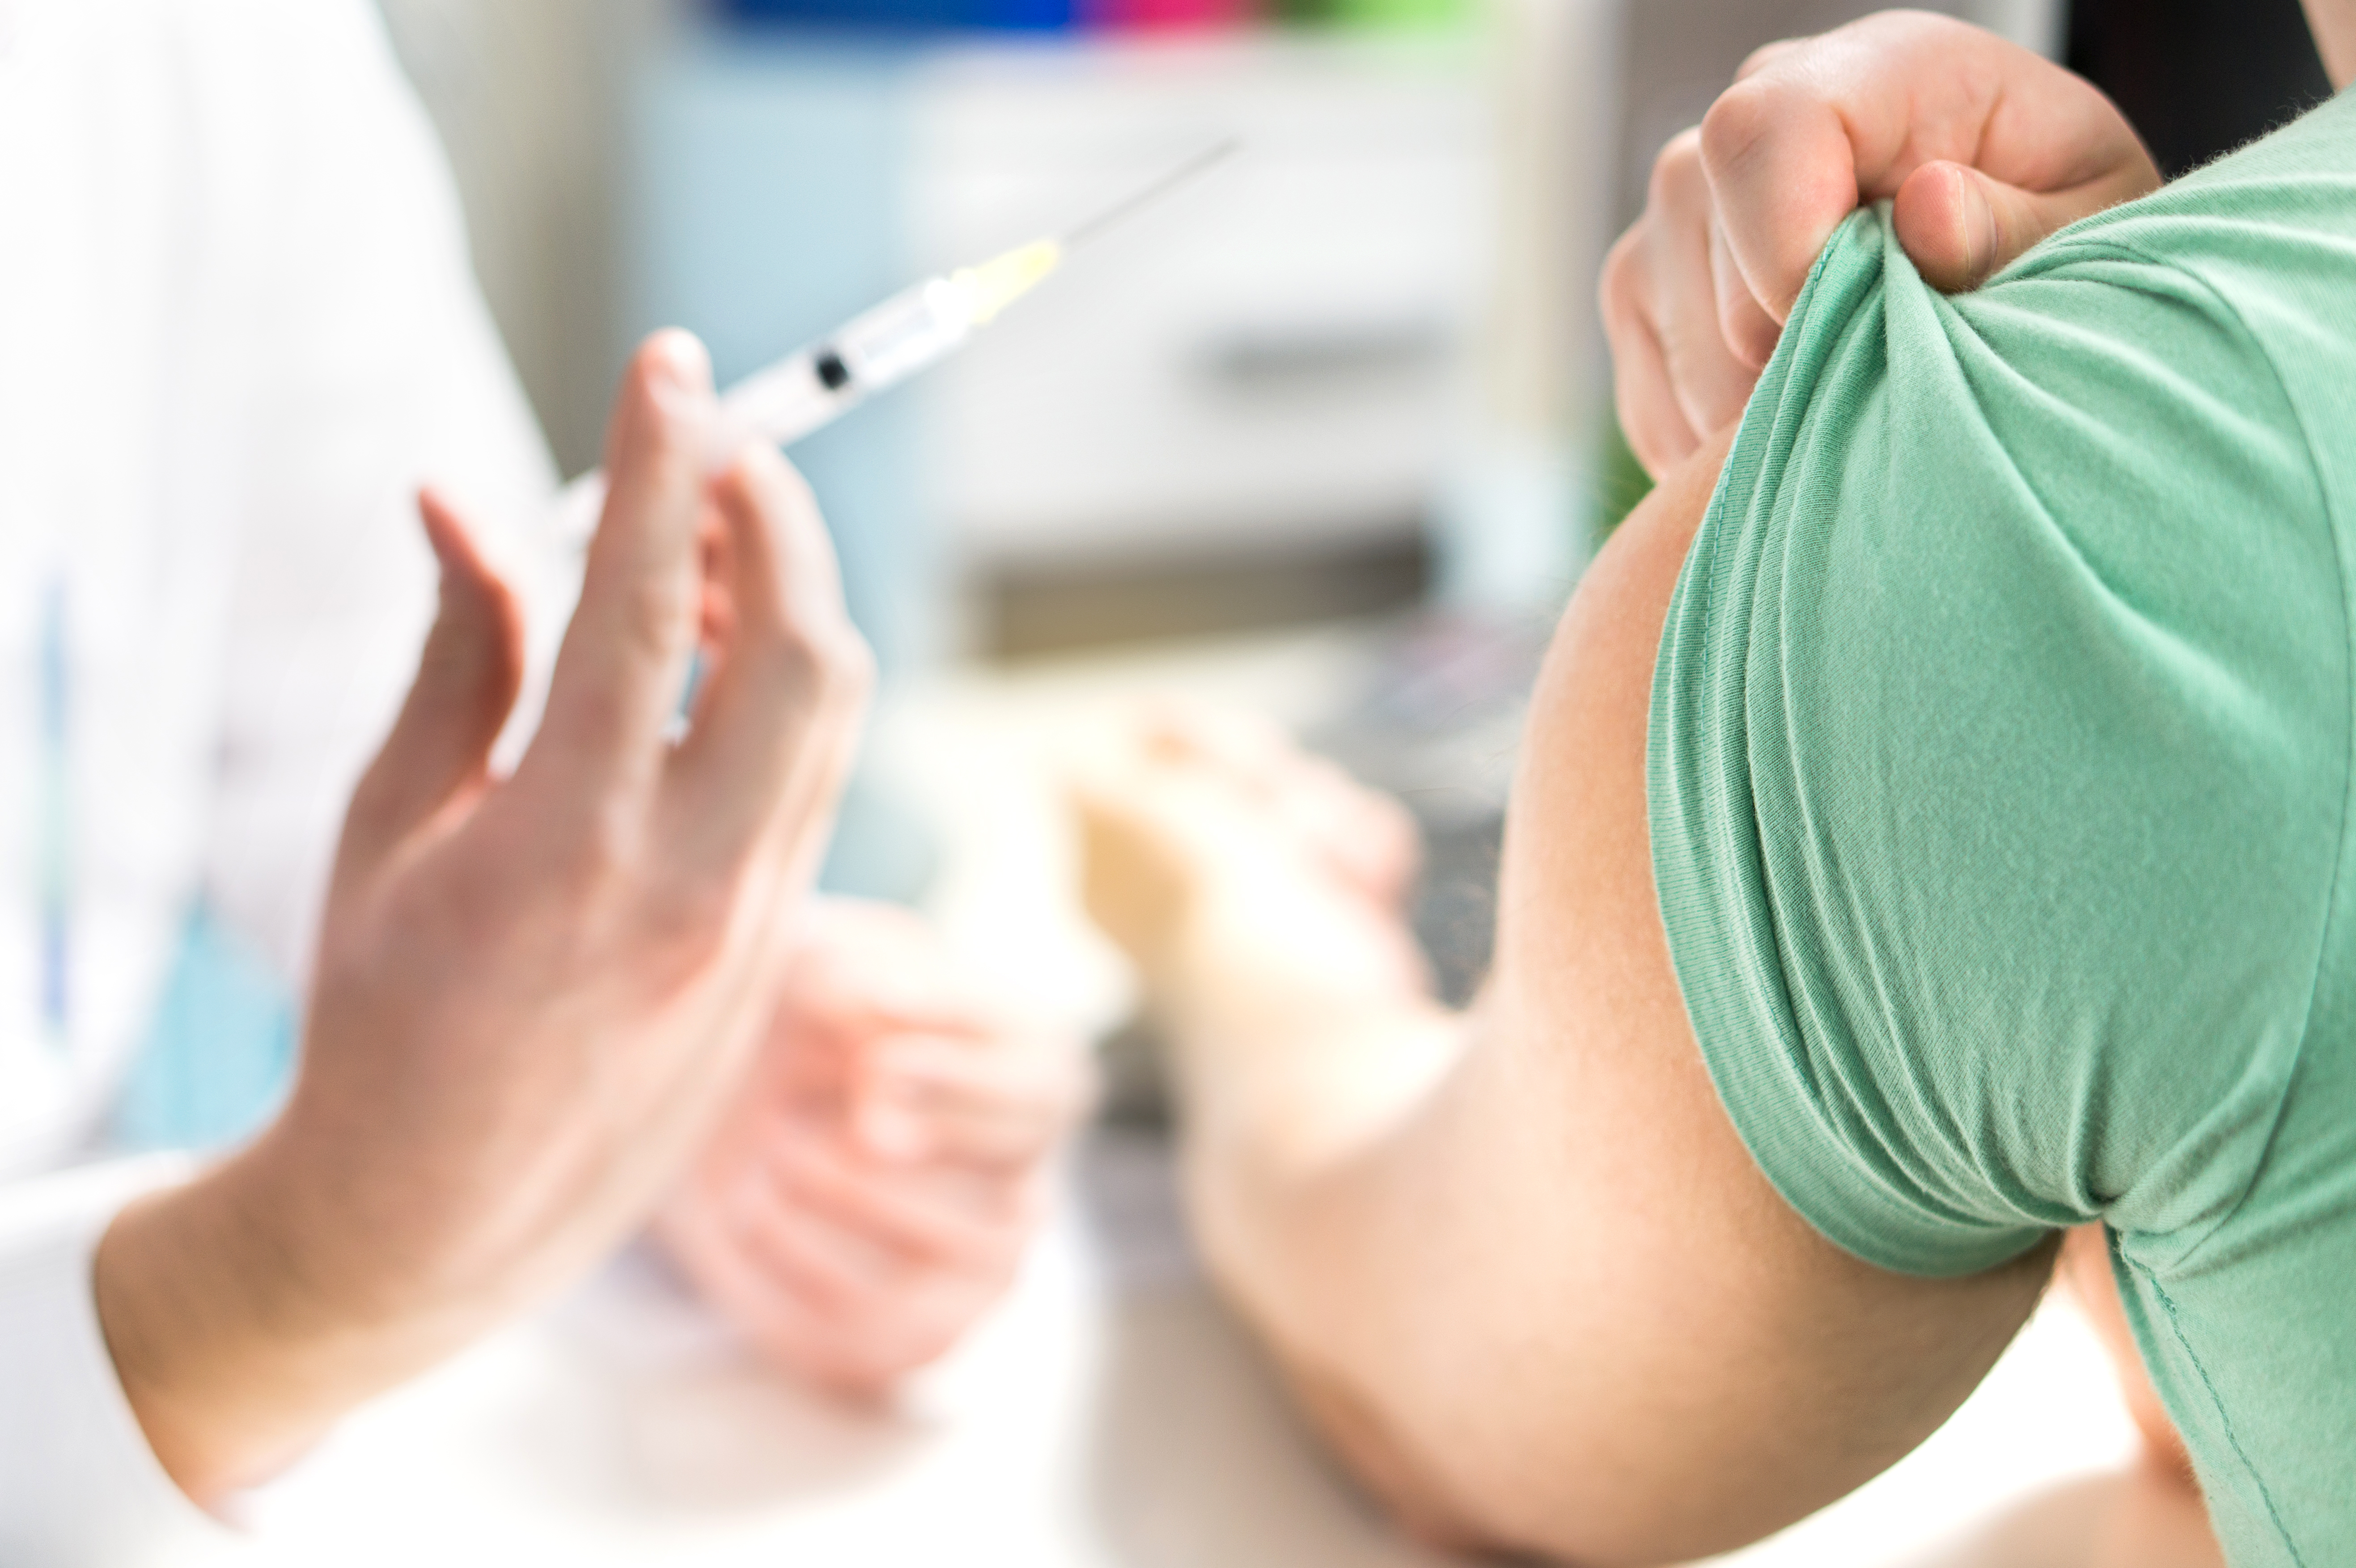 A patient prepares to receive a vaccination. Shutterstock image via Tero Vesalainen